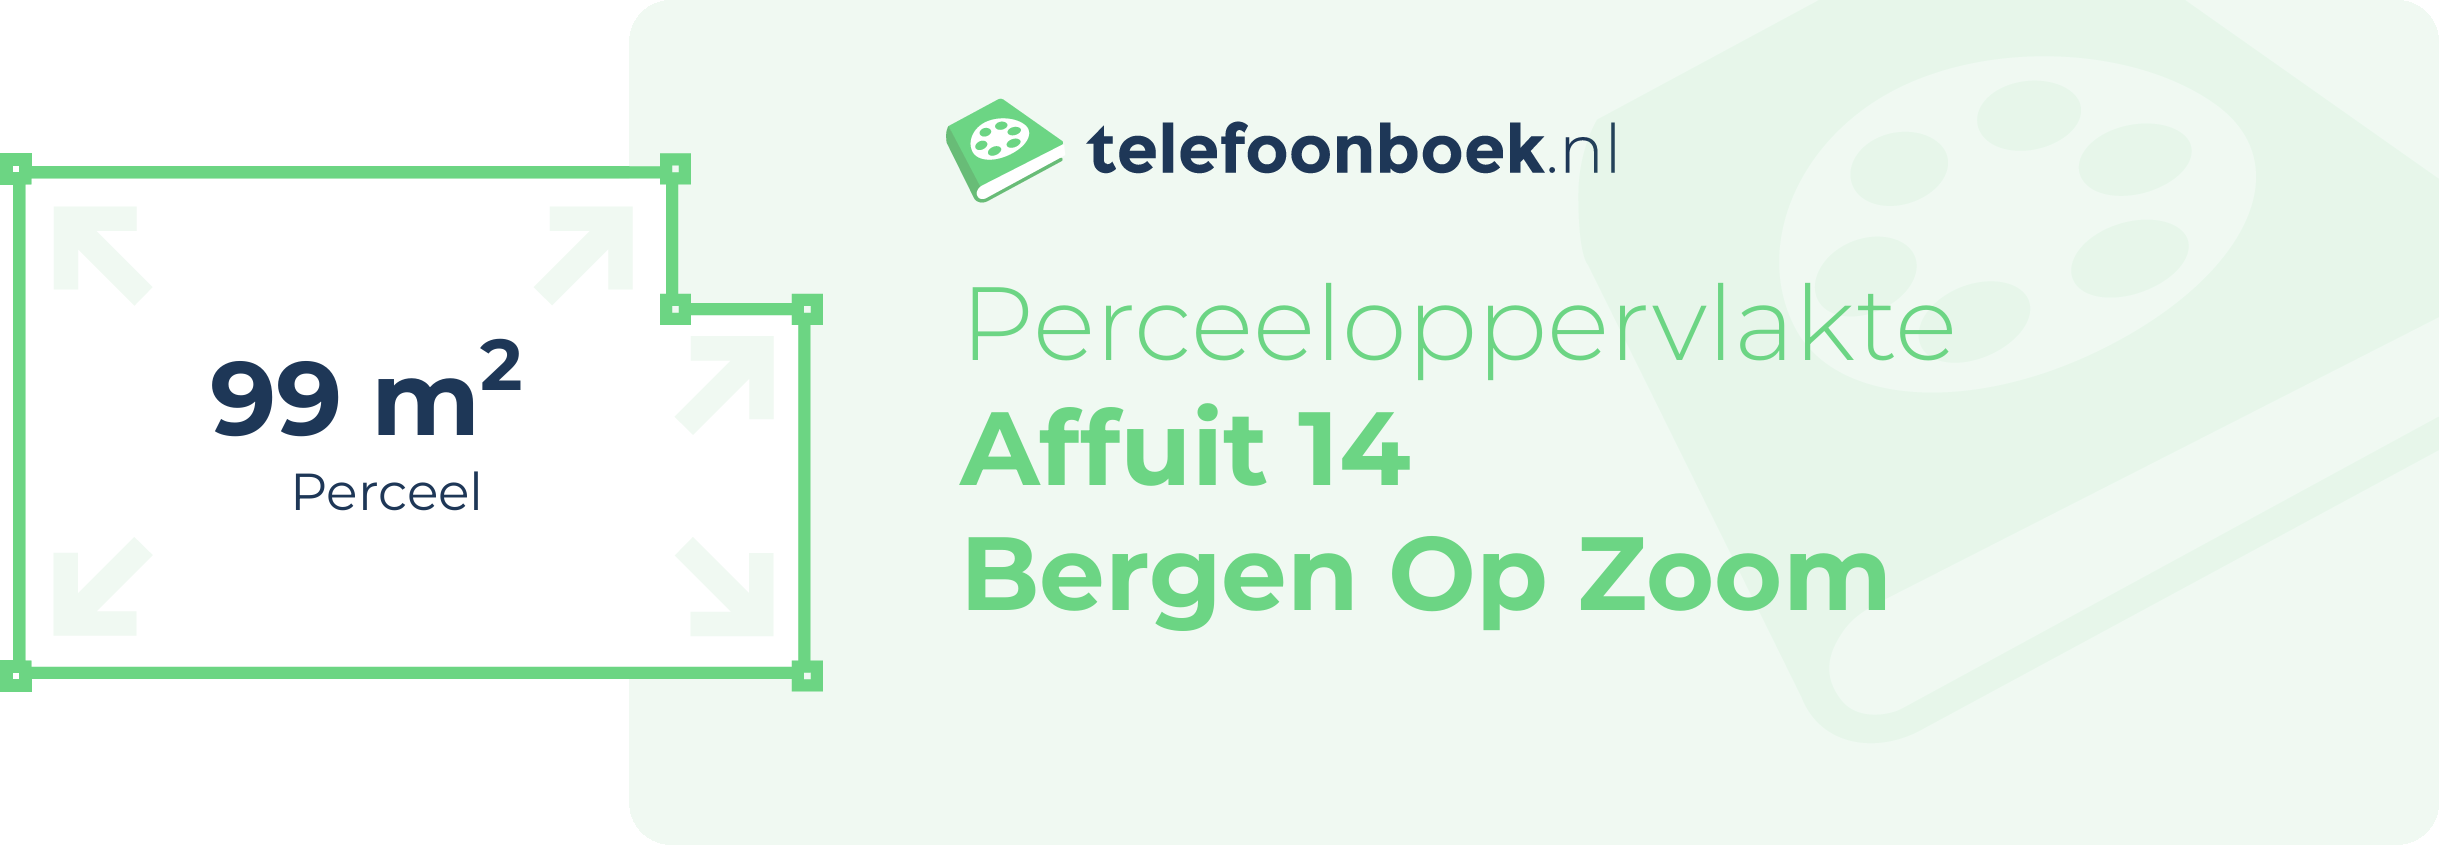 Perceeloppervlakte Affuit 14 Bergen Op Zoom